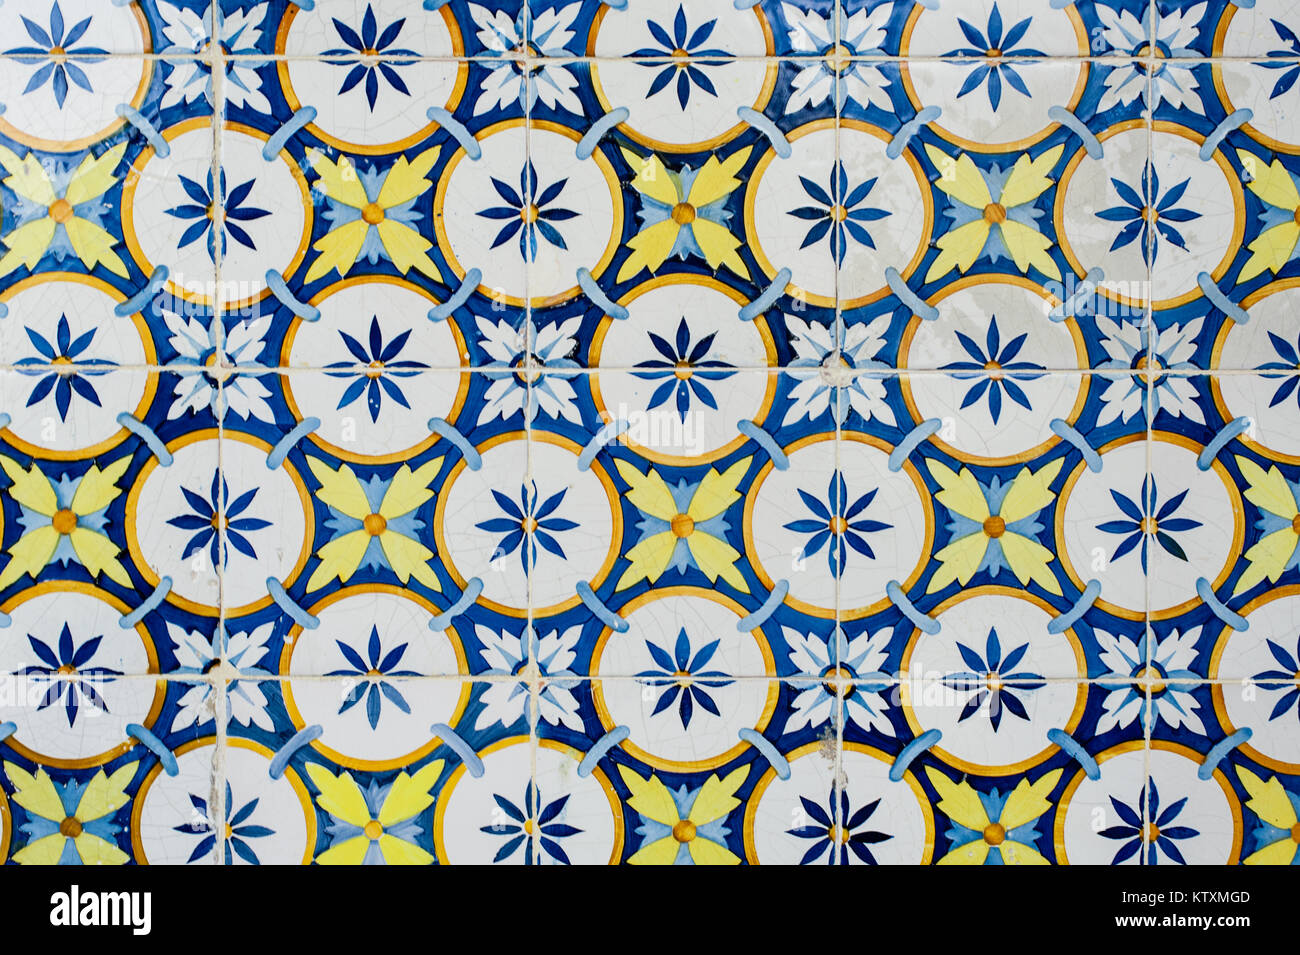 Azulejo portoghese di piastrelle ceramiche con una circolare, motivo floreale, decorare le pareti esterne di un edificio a Lisbona, Portogallo. Foto Stock